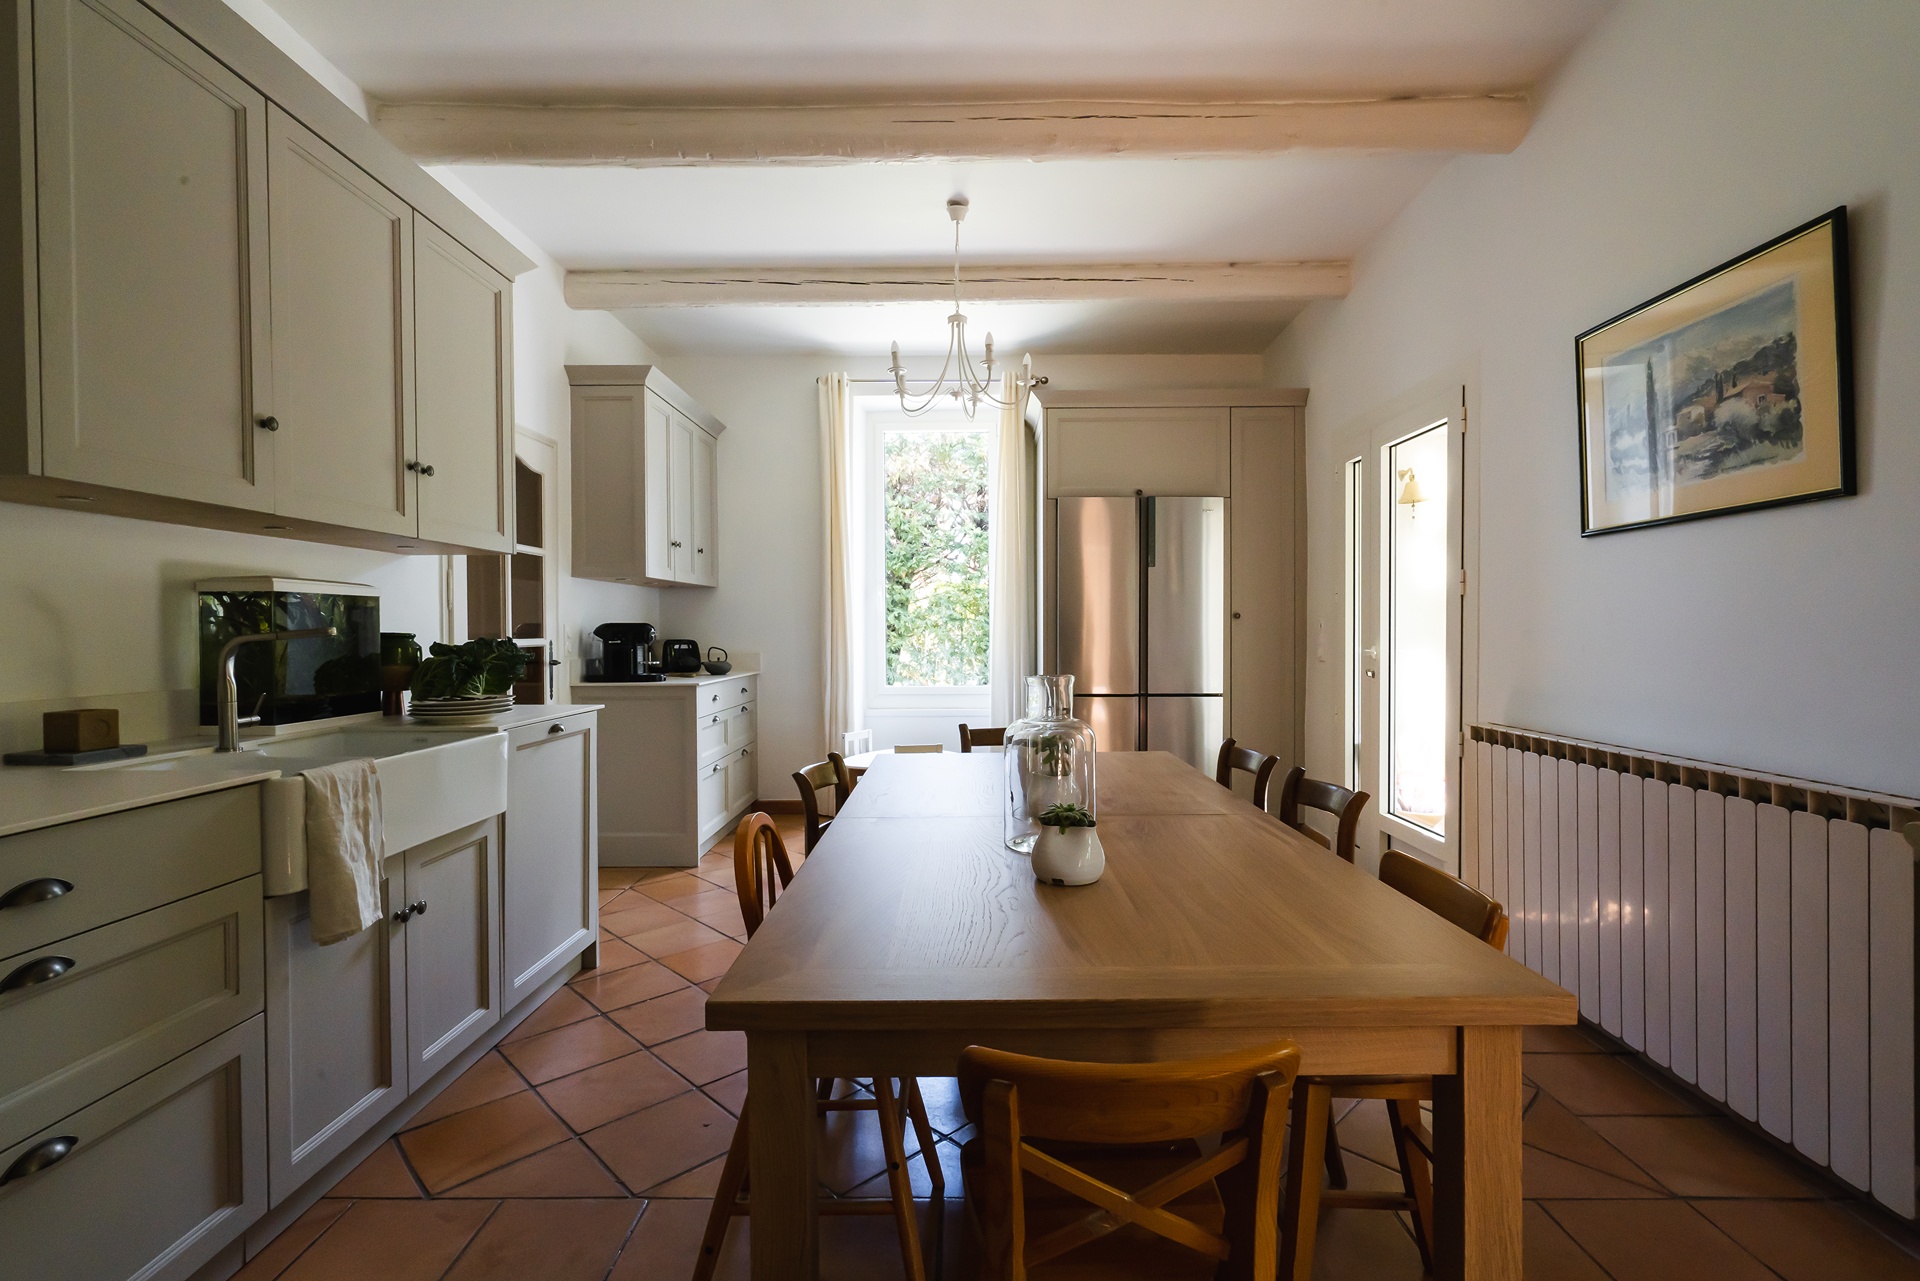 Maïstrau, artisan créateur de cuisine à Avignon dans le Vaucluse, conçoit et fabrique des projets uniques et sur-mesure pour la cuisine et l’aménagement de toute la maison.